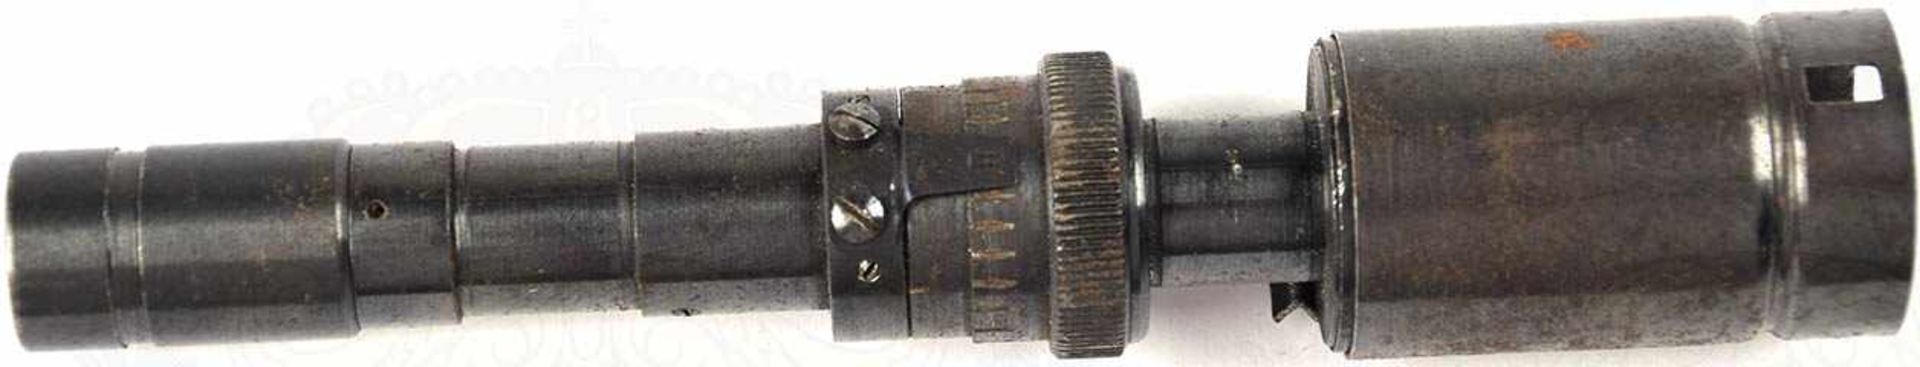 ZIELFERNROHR ZF 41/1, brüniertes Eisen, Vergrößerung ca. 3-fach, Optik klar, L. 14,8 cm